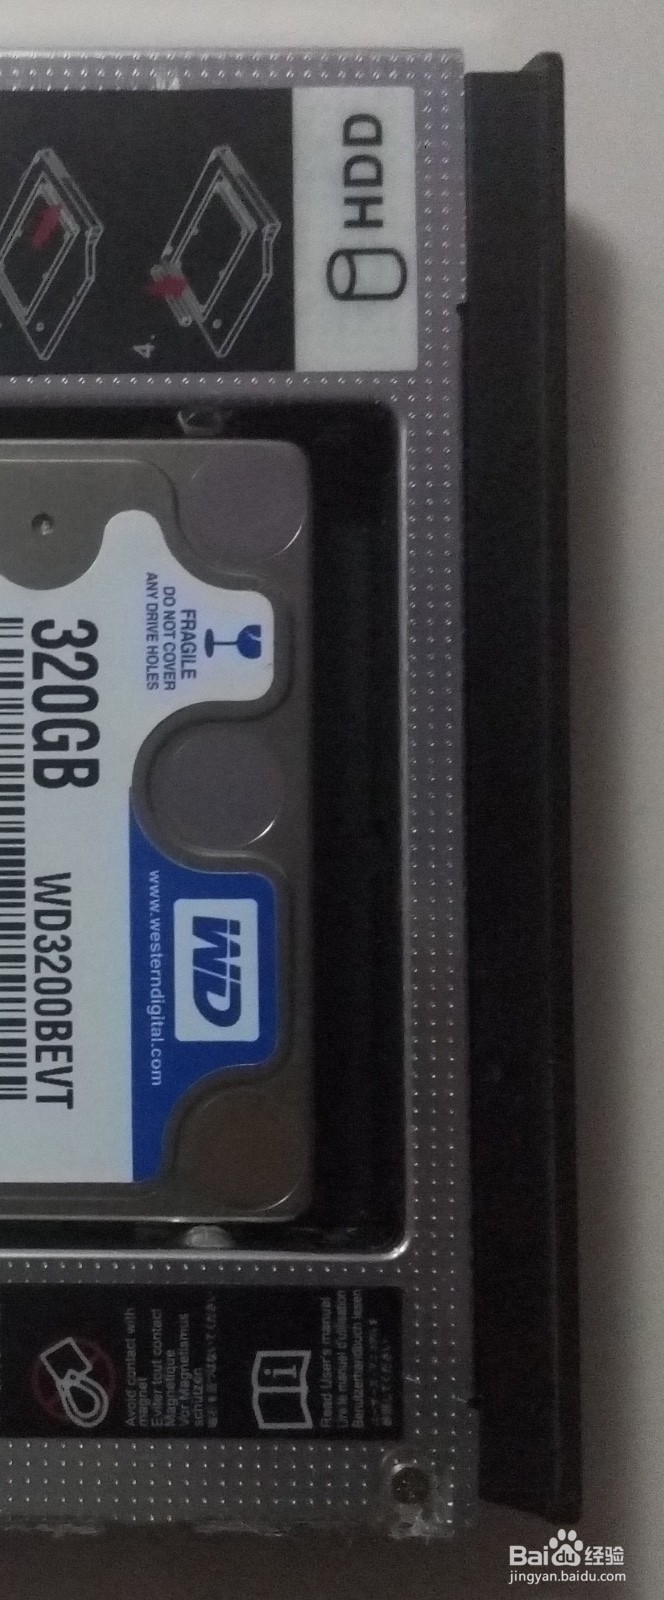 联想的新电脑可以装其他牌子的SSD吗